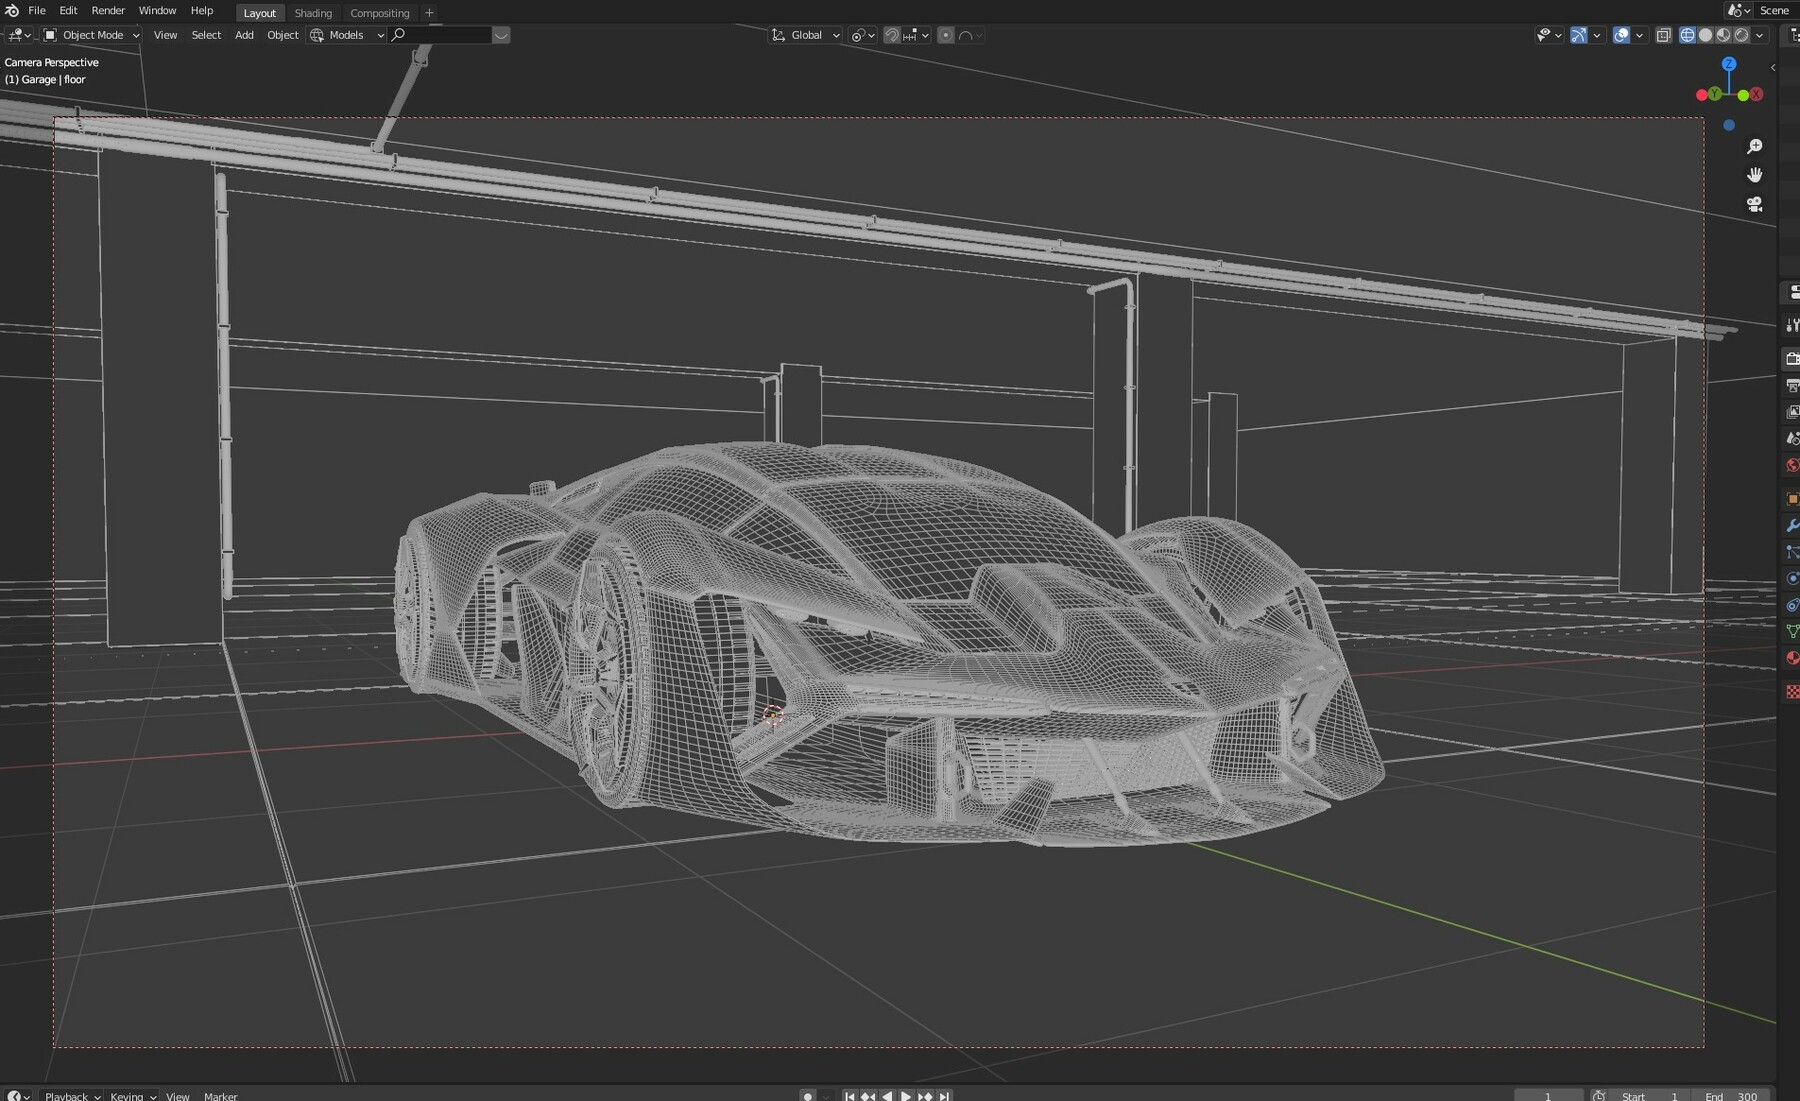 Lamborghini Terzo Millennio - Garage - FlippedNormals